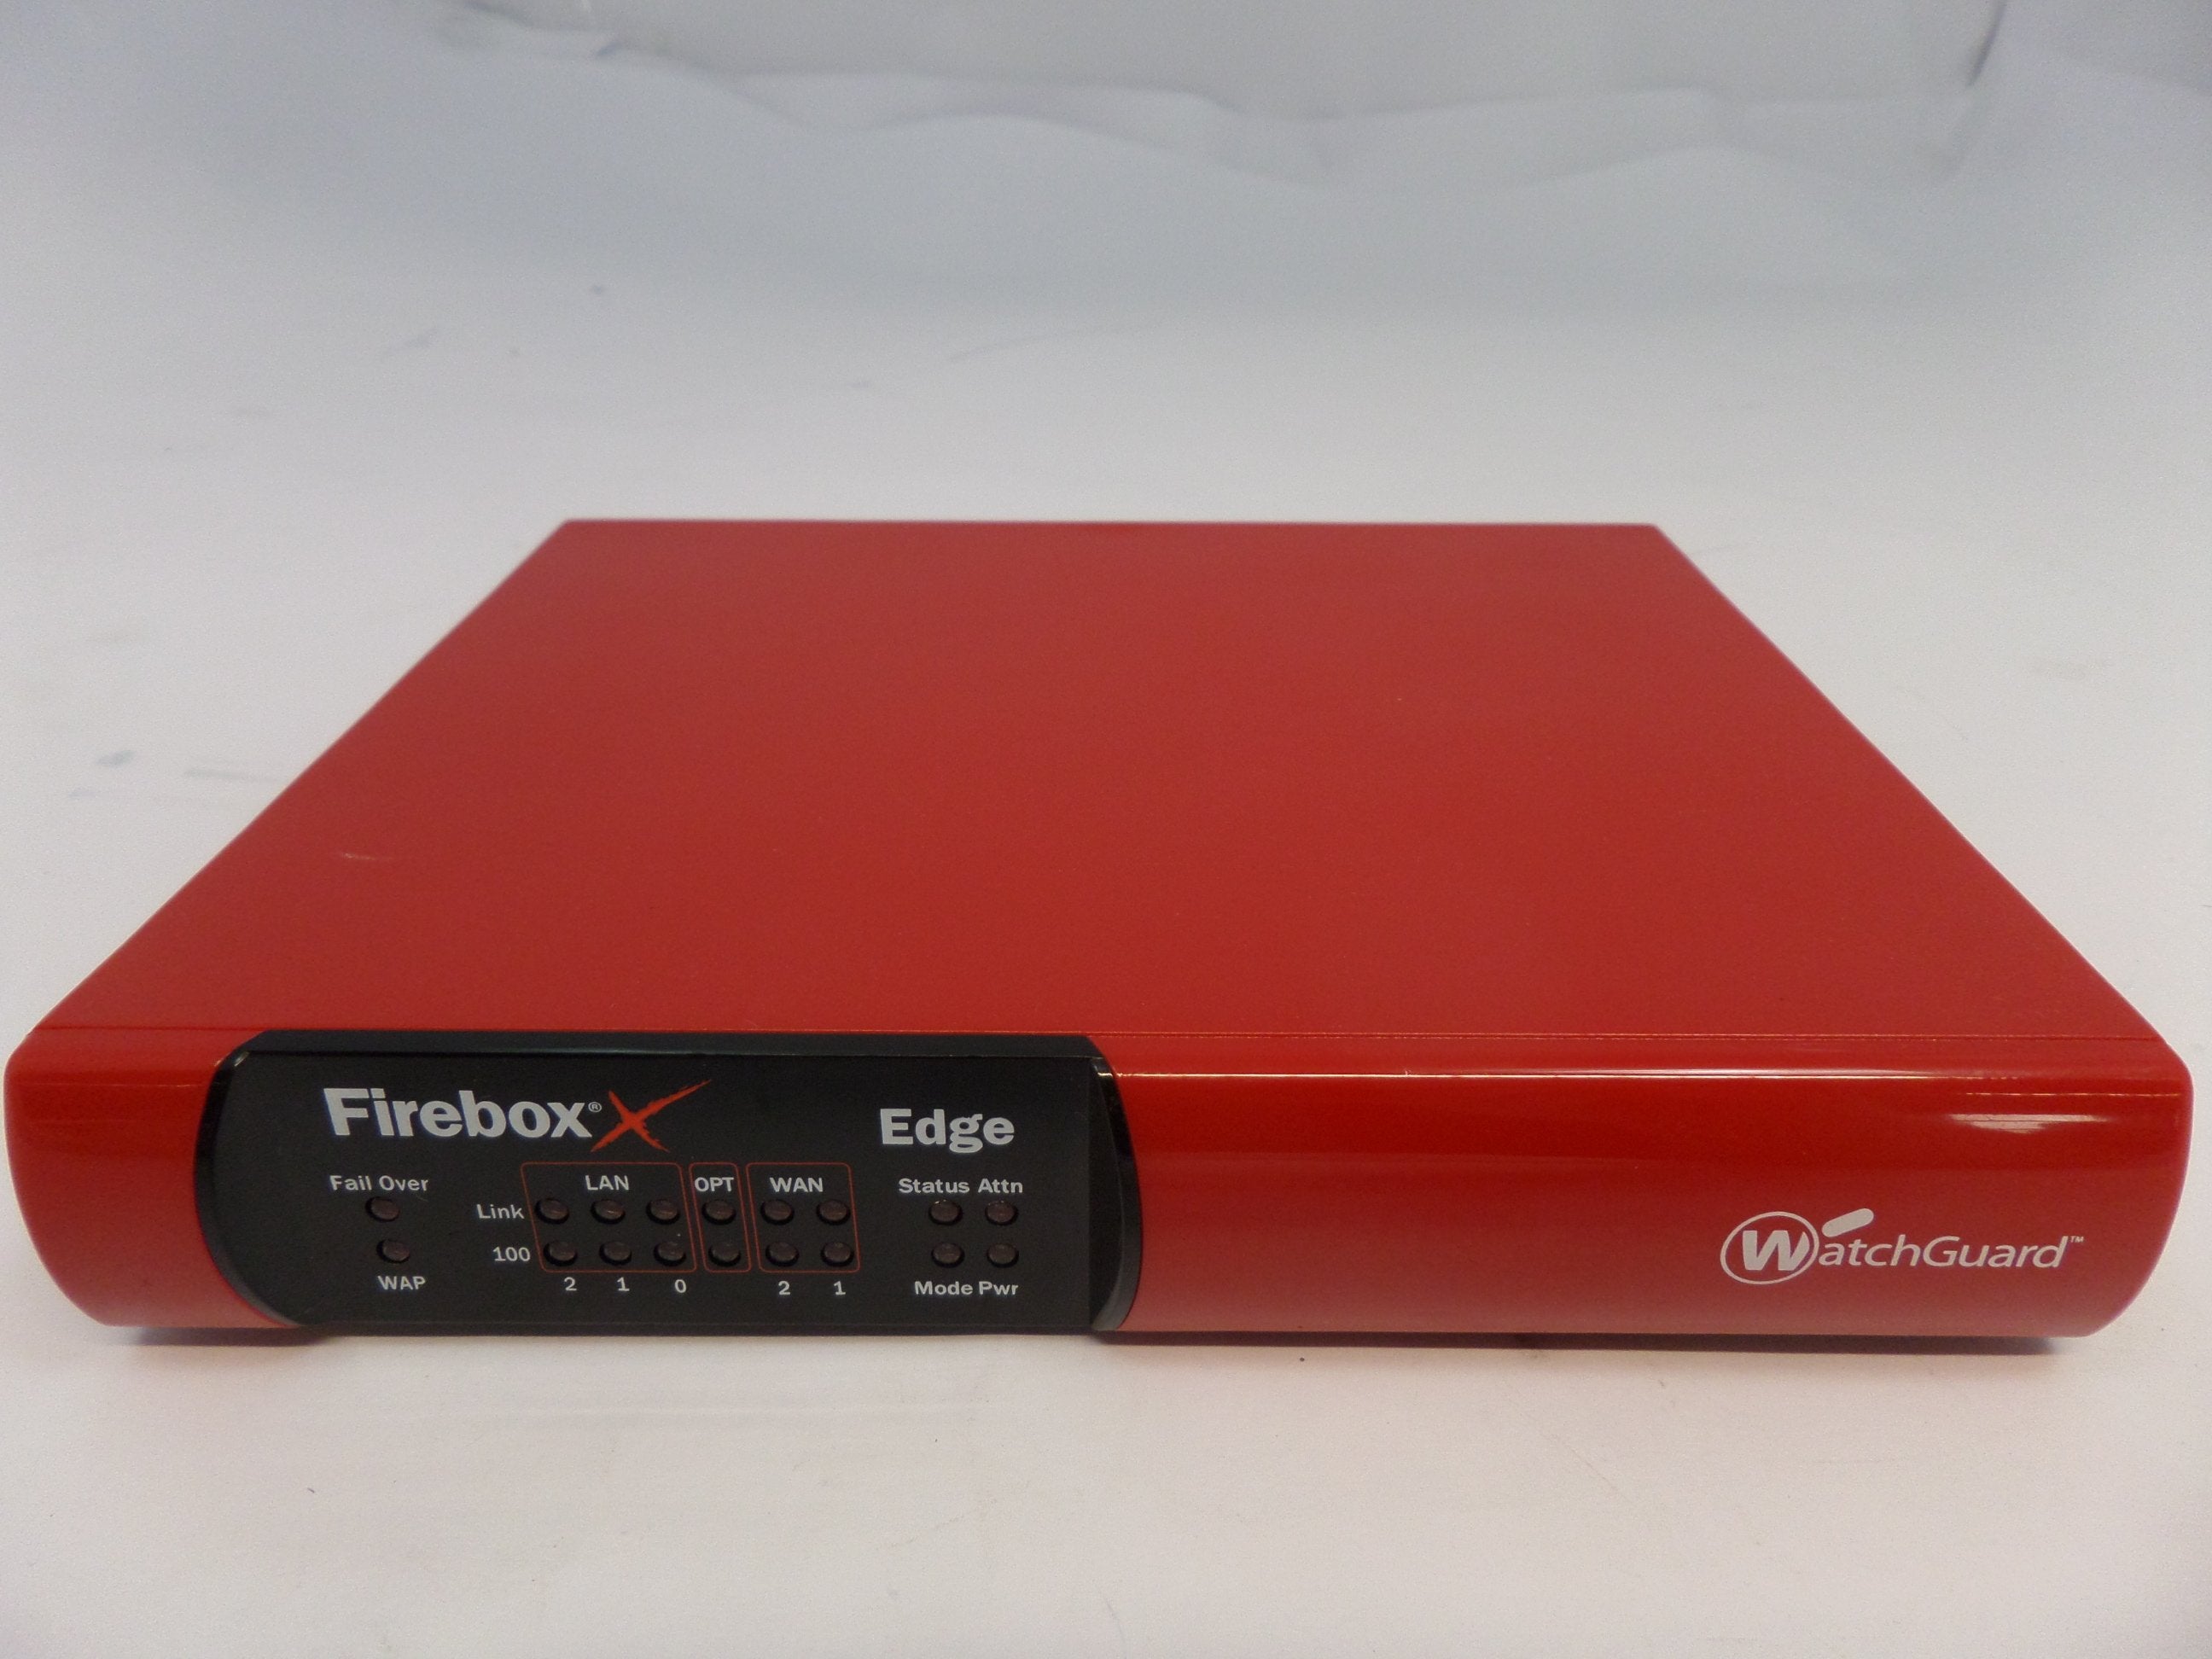 X20e - WatchGuard XP2E6 Firebox X20e Edge - USED